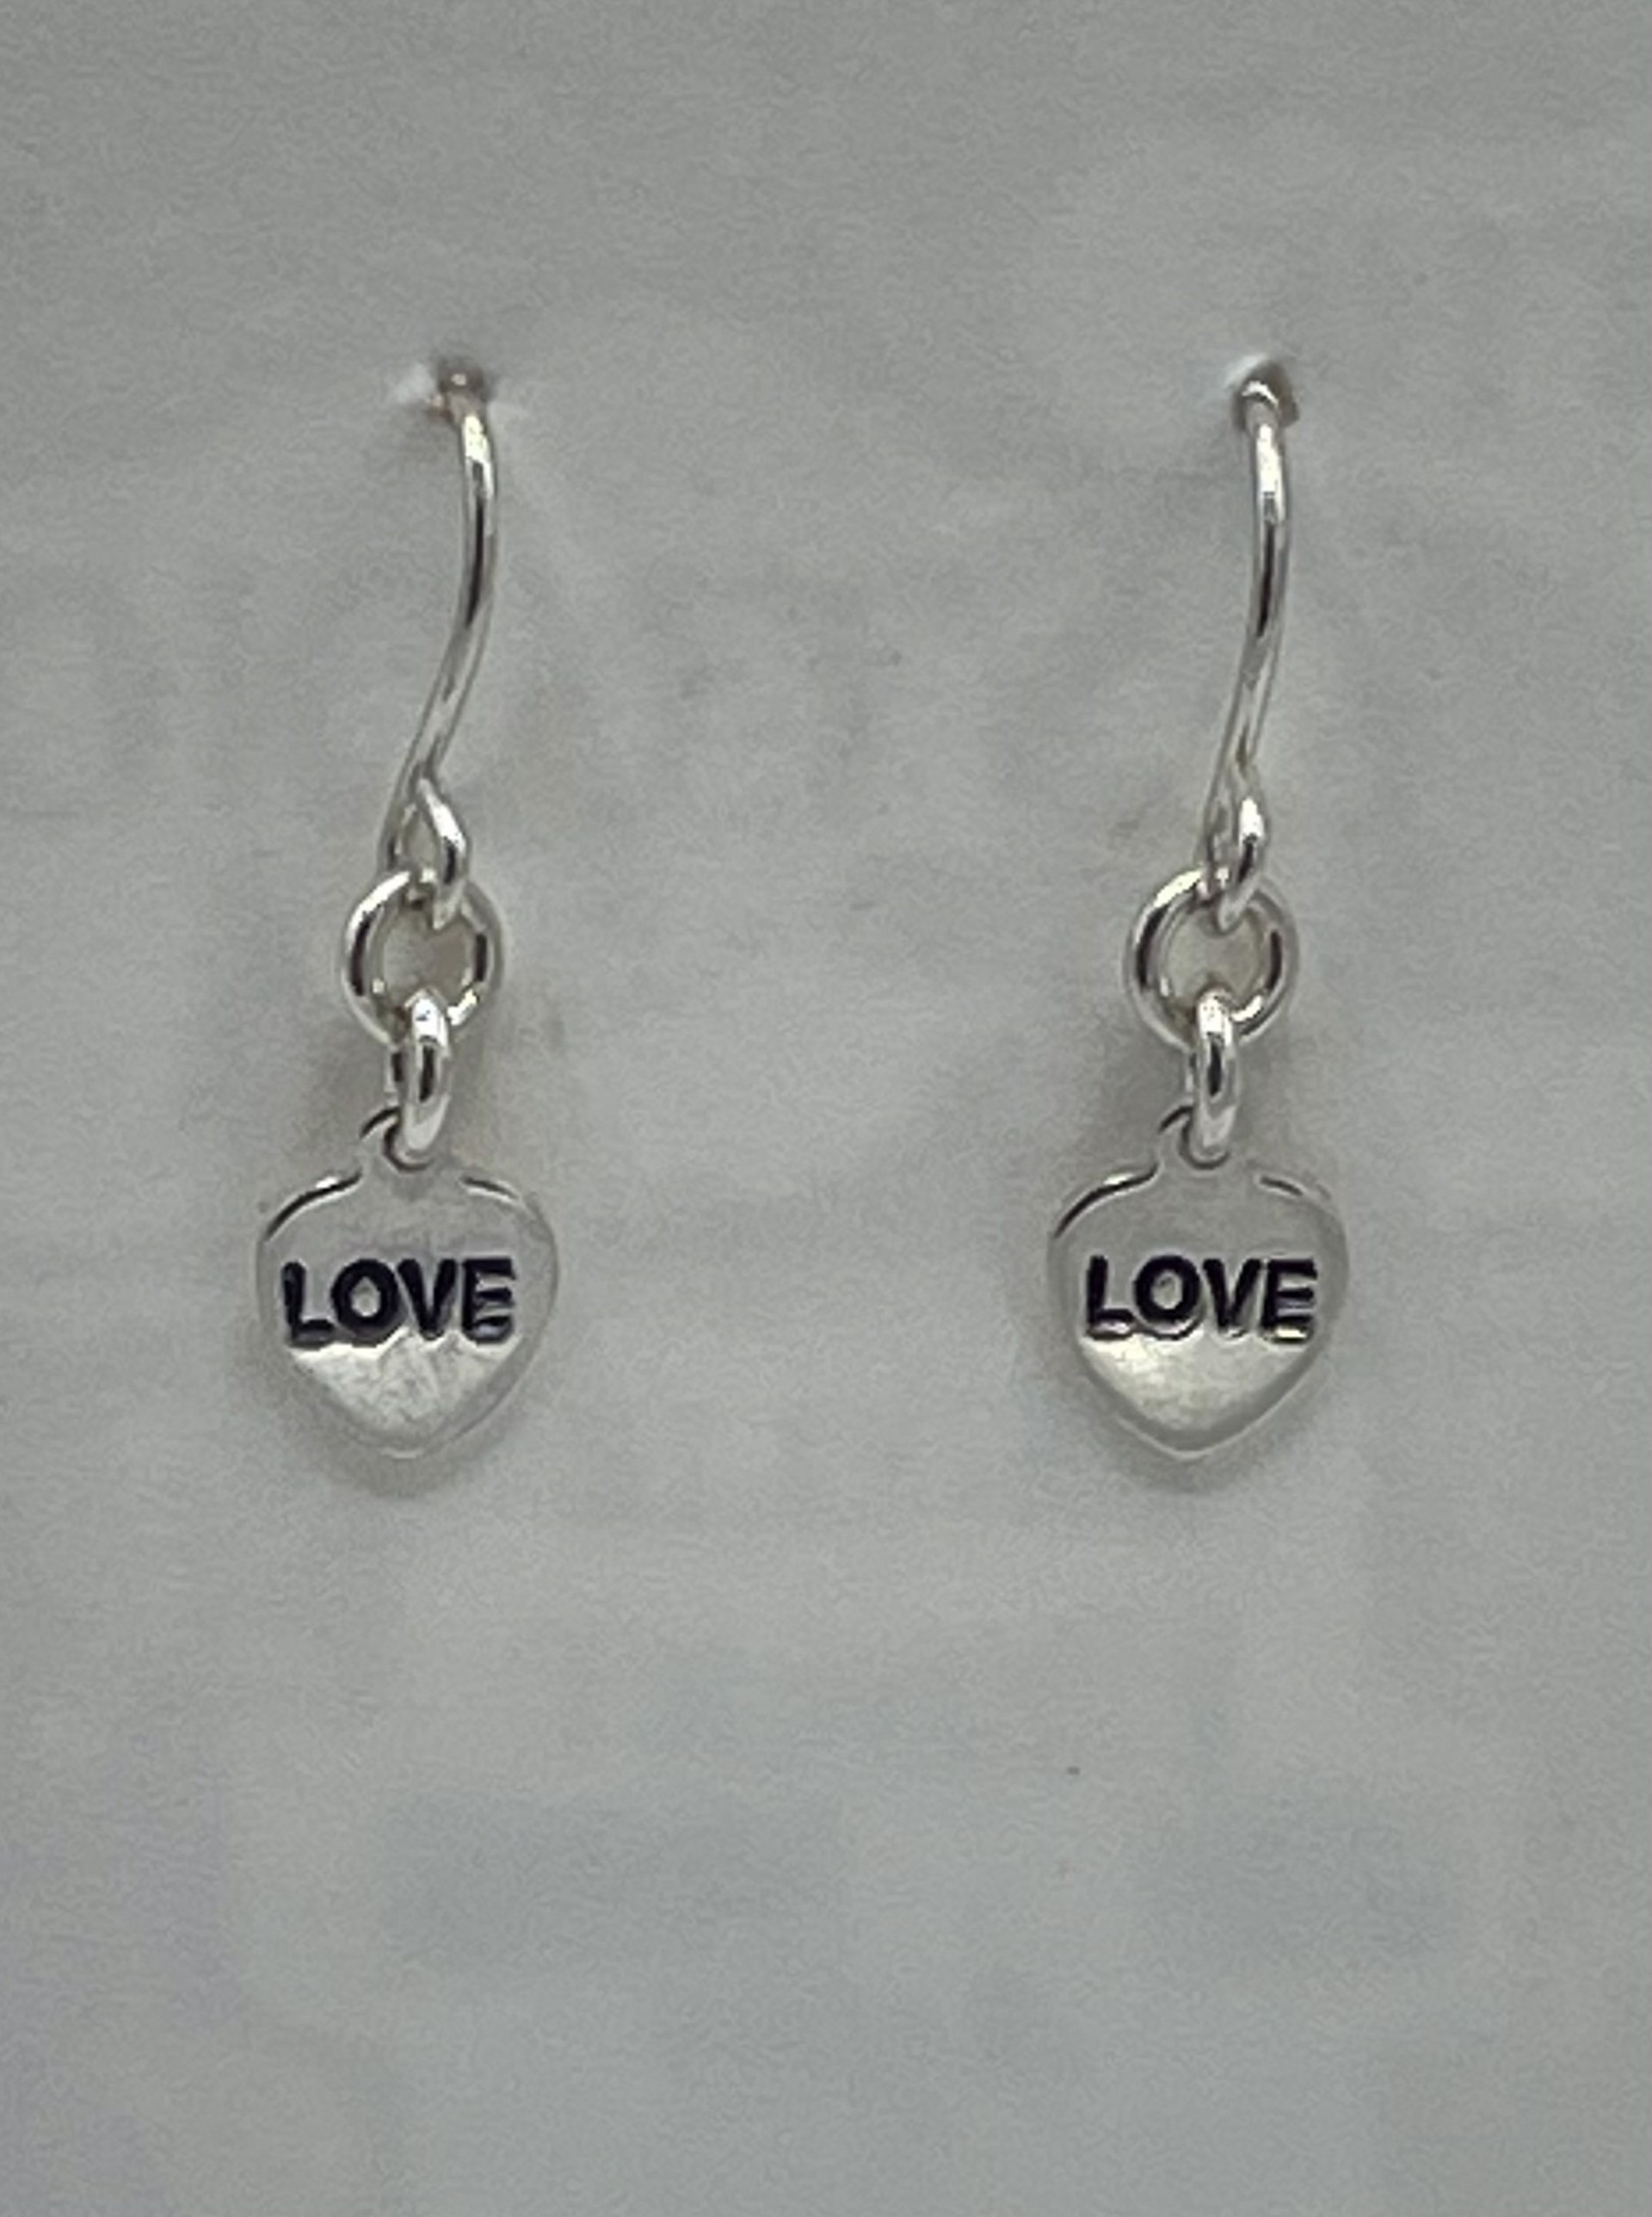 Love / Love Mantra Earrings by Emelie Hebert